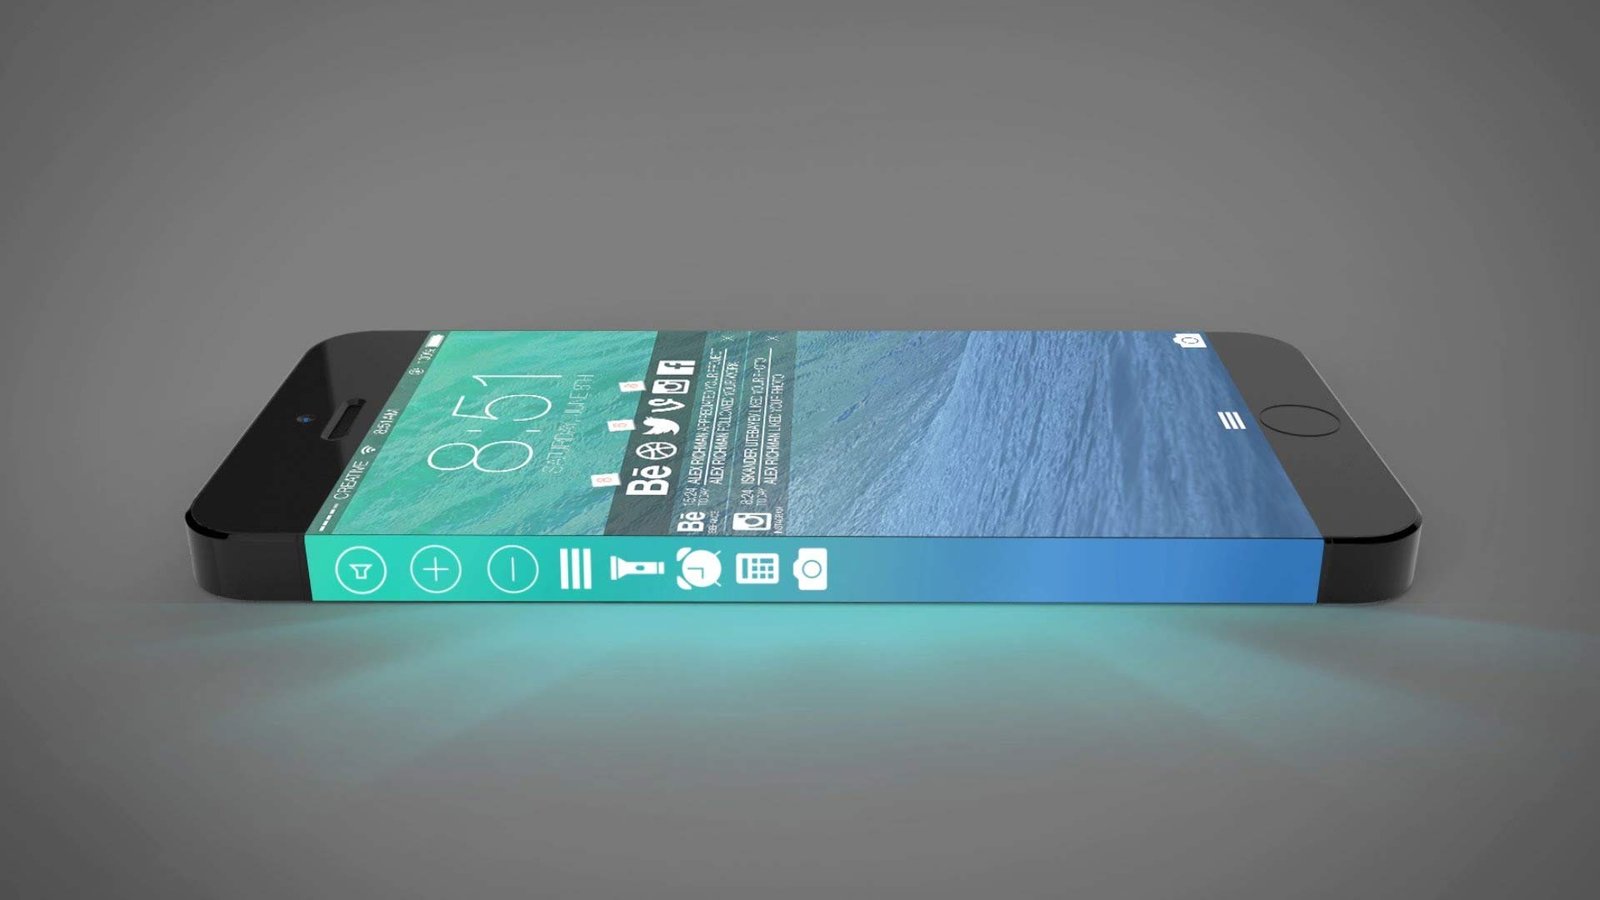 Samsung va lancer son premier smartphone à écran pliable en janvier 2016